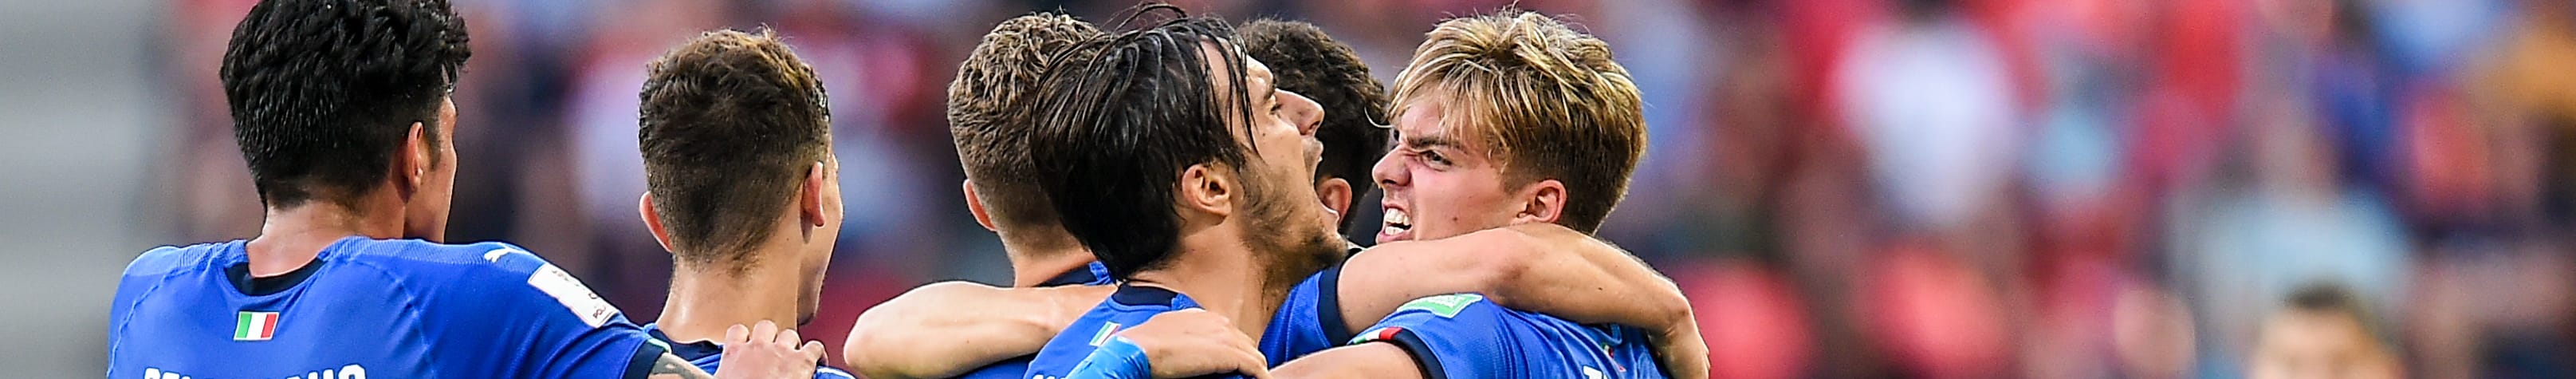 Ucraina-Italia U20, gli azzurrini danno l'assalto alla finale